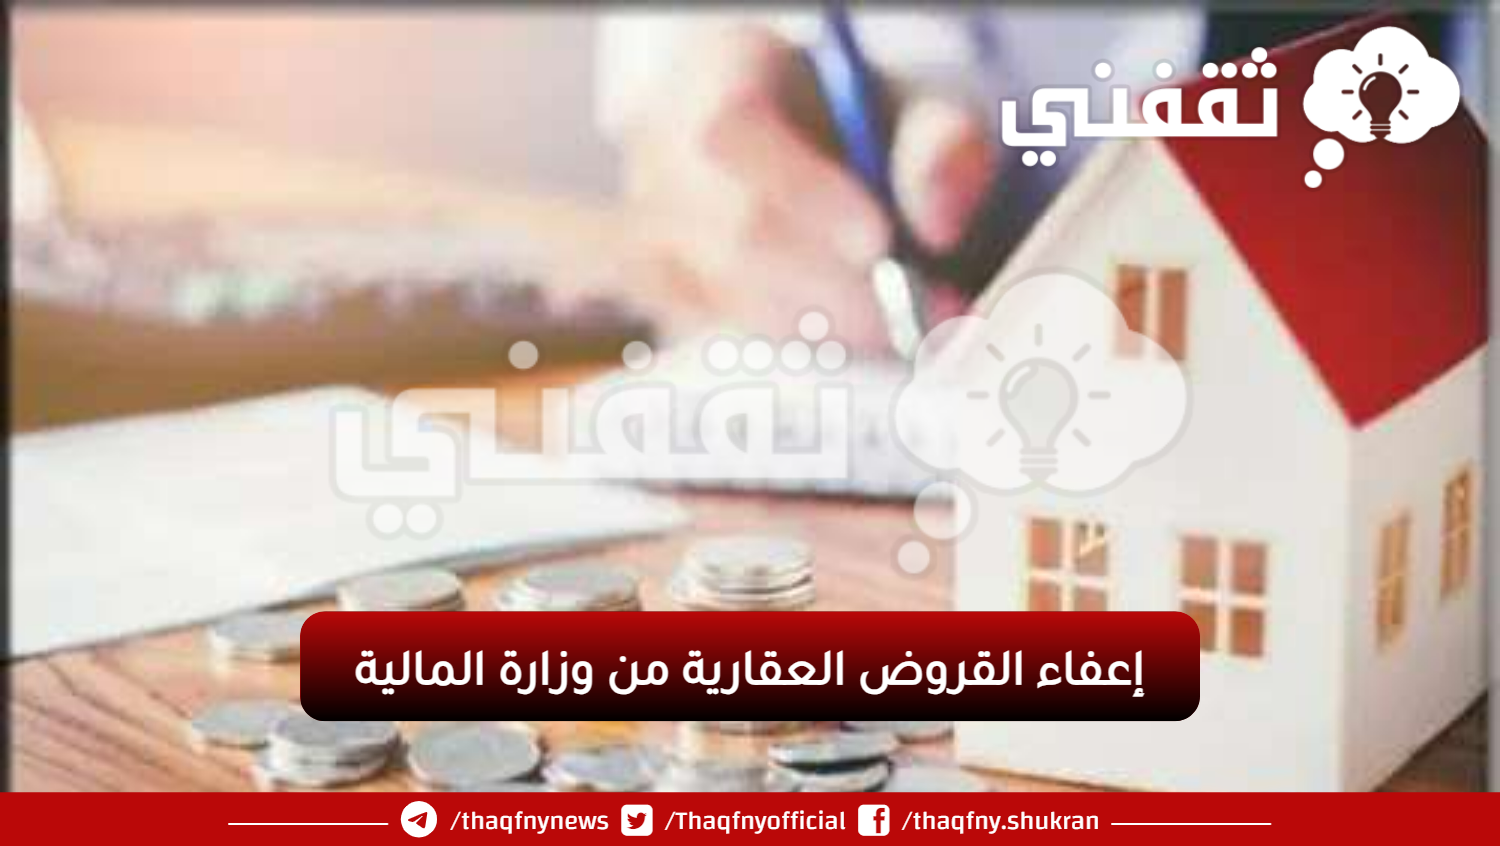 إعفاء القروض العقارية من وزارة المالية - مدونة التقنية العربية